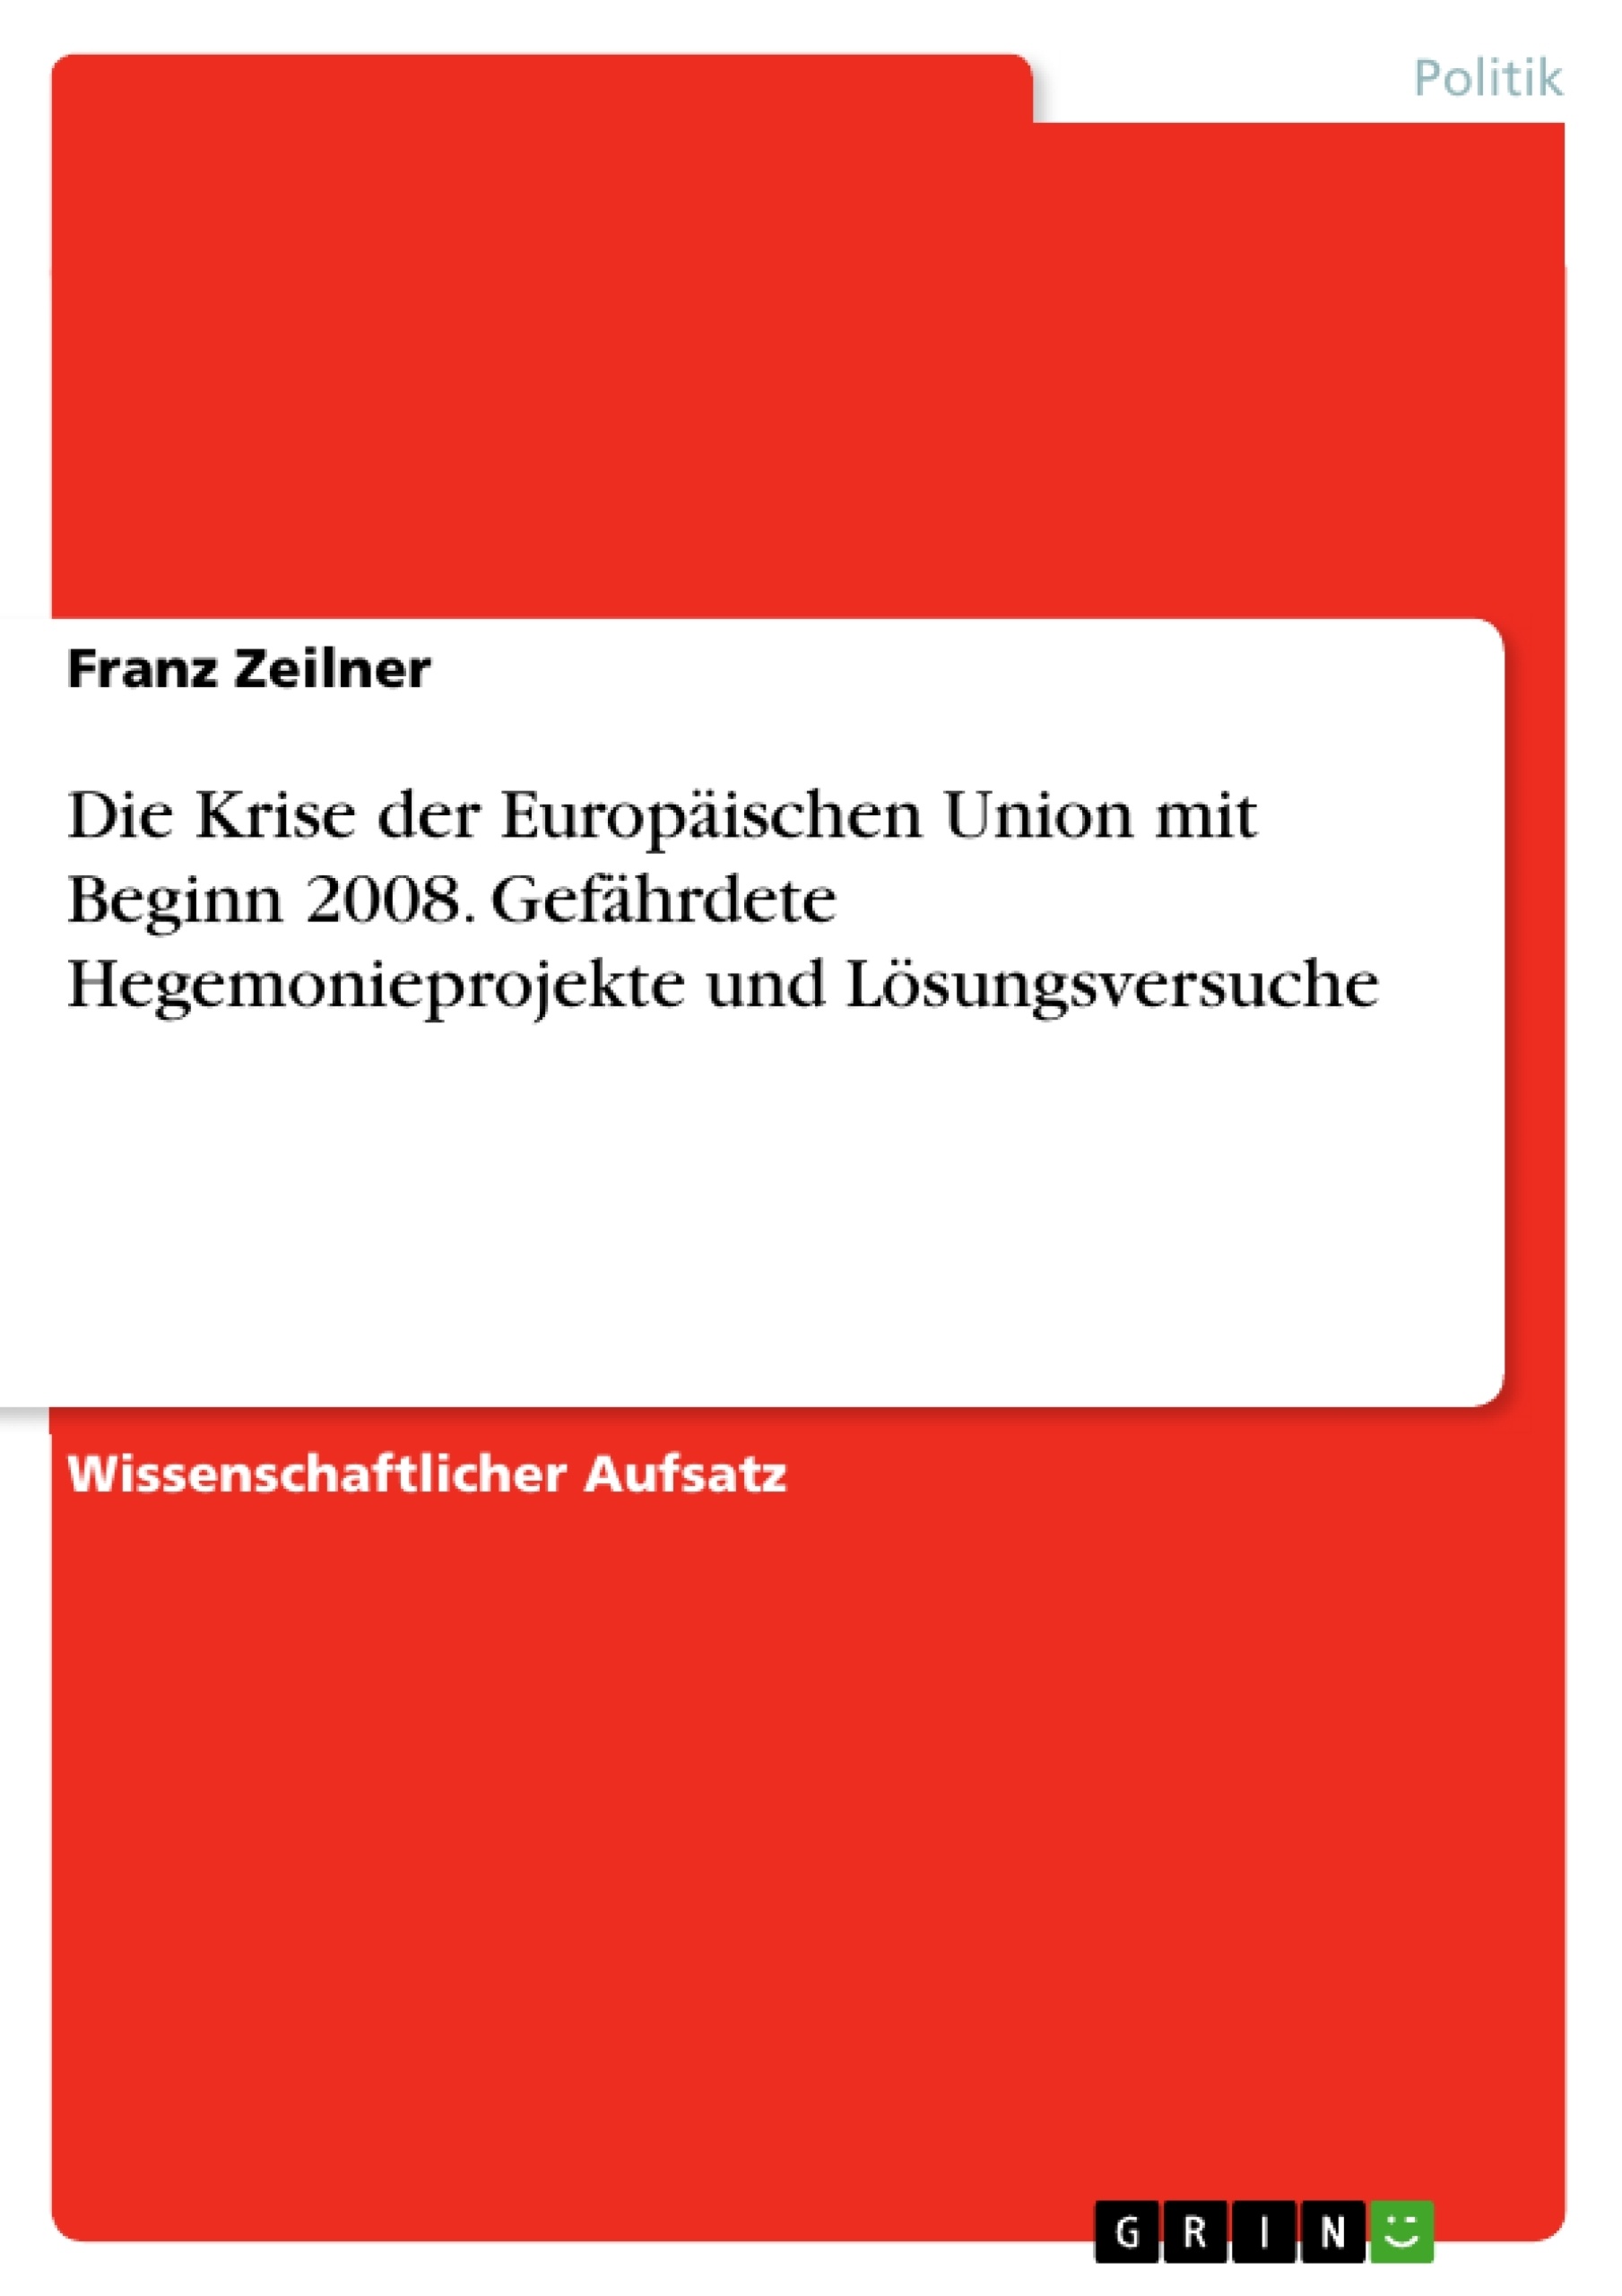 Título: Die Krise der Europäischen Union mit Beginn 2008. Gefährdete Hegemonieprojekte und Lösungsversuche